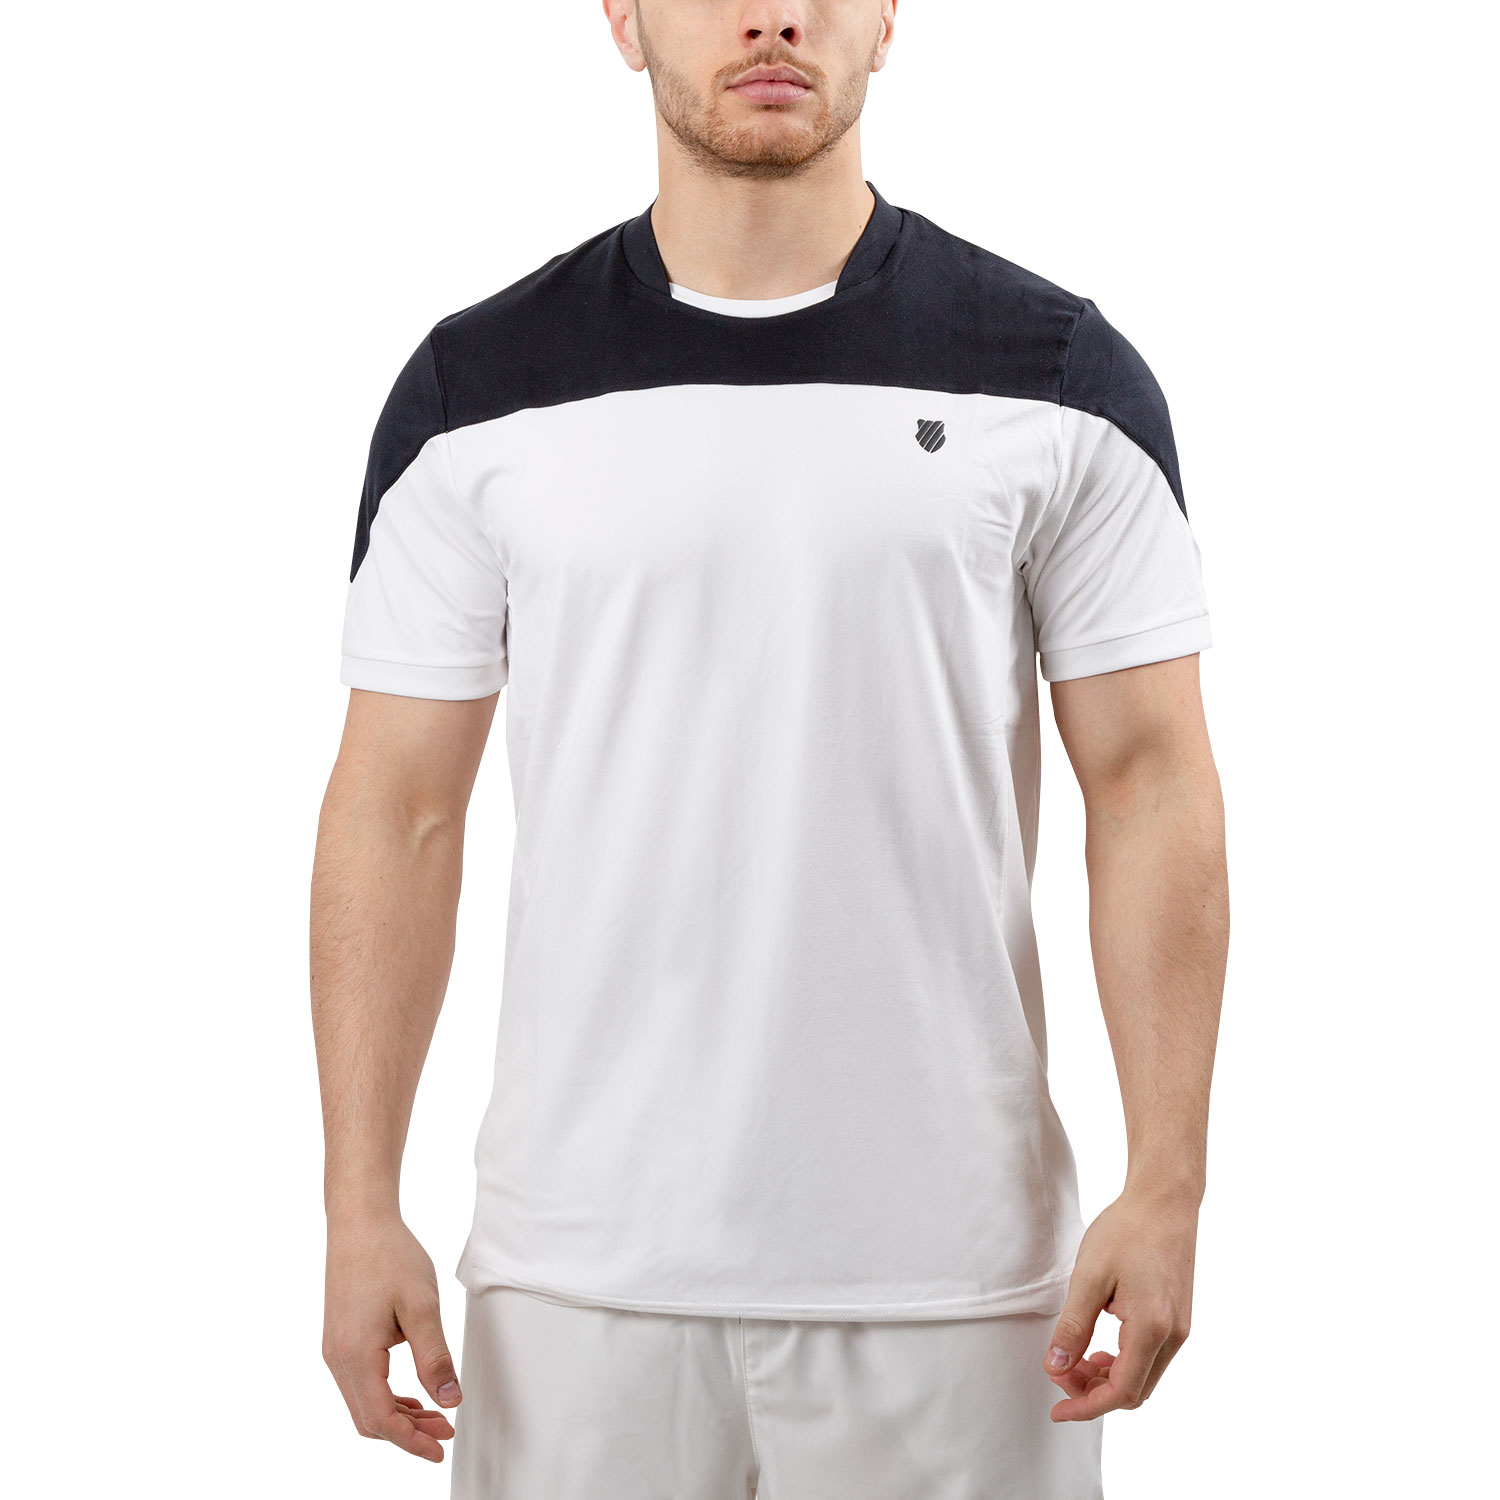 K-Swiss Hypercourt Block Crew T-Shirt - White/Black